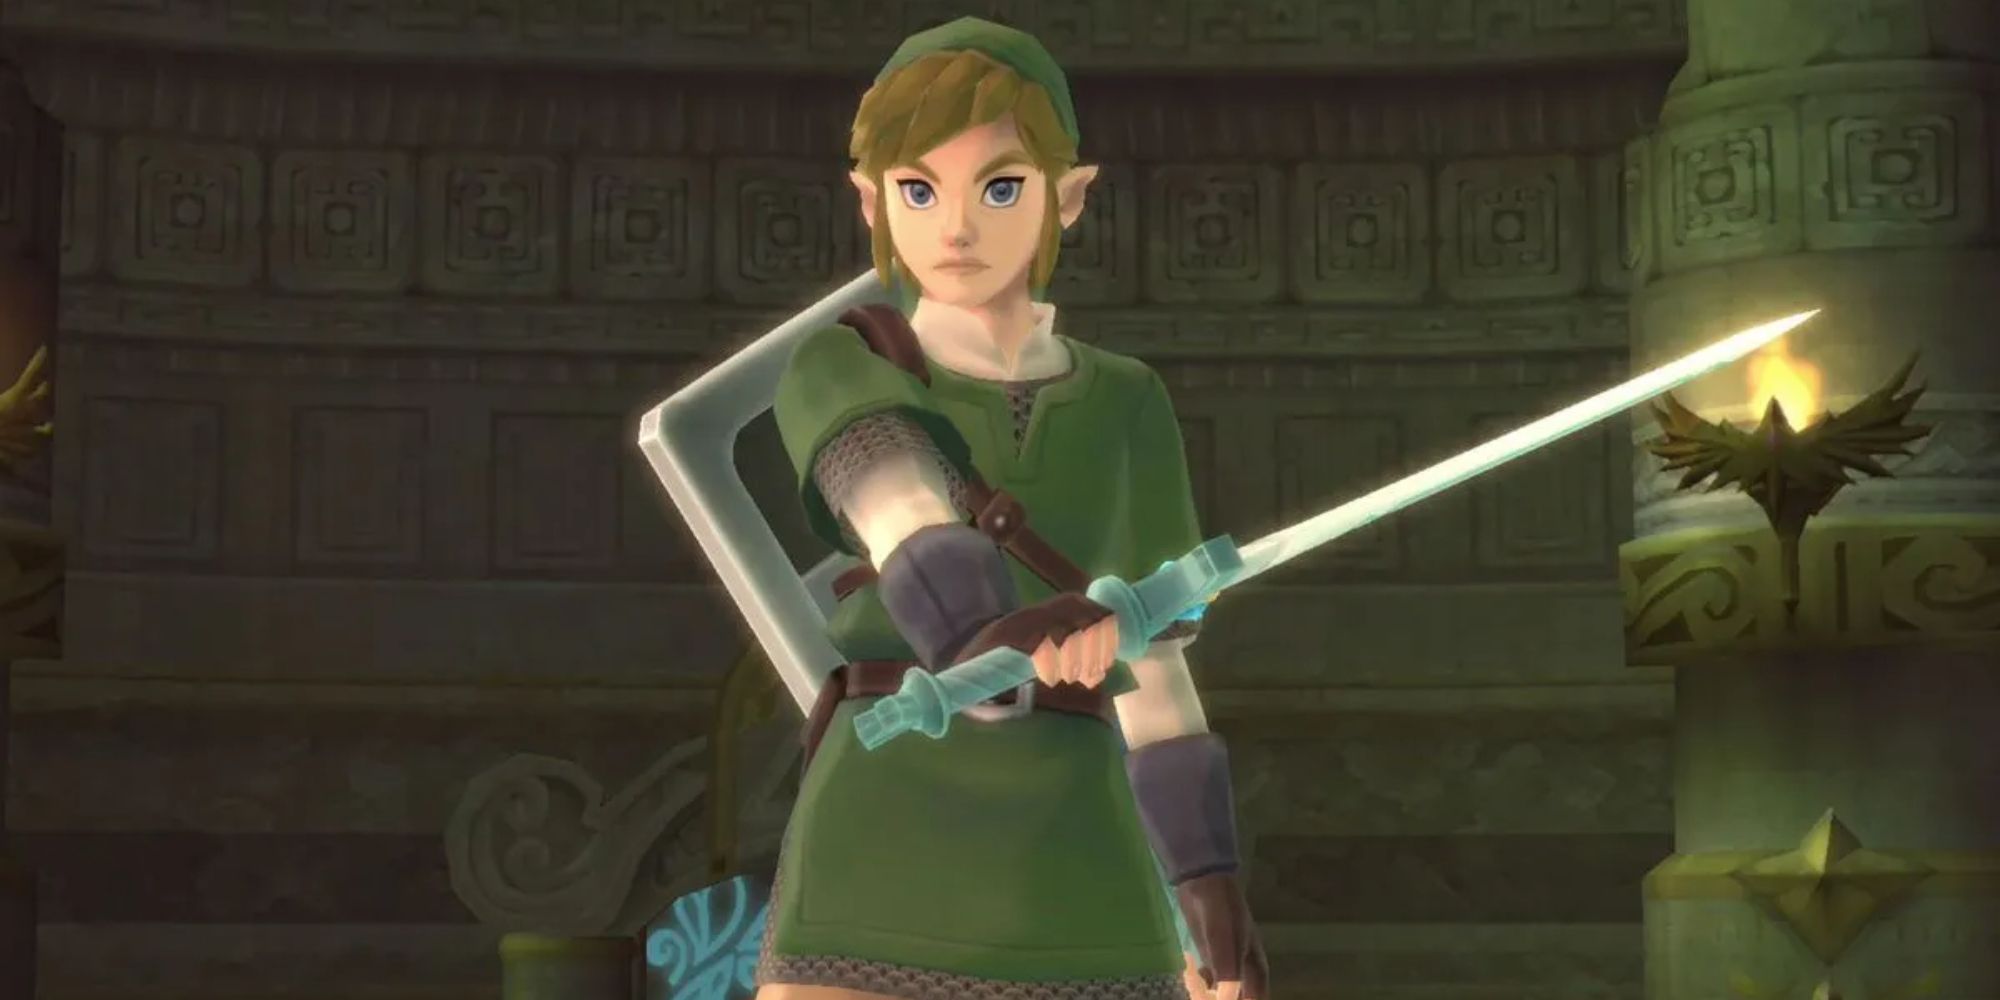 Link wielding a sword in Skyward Sword